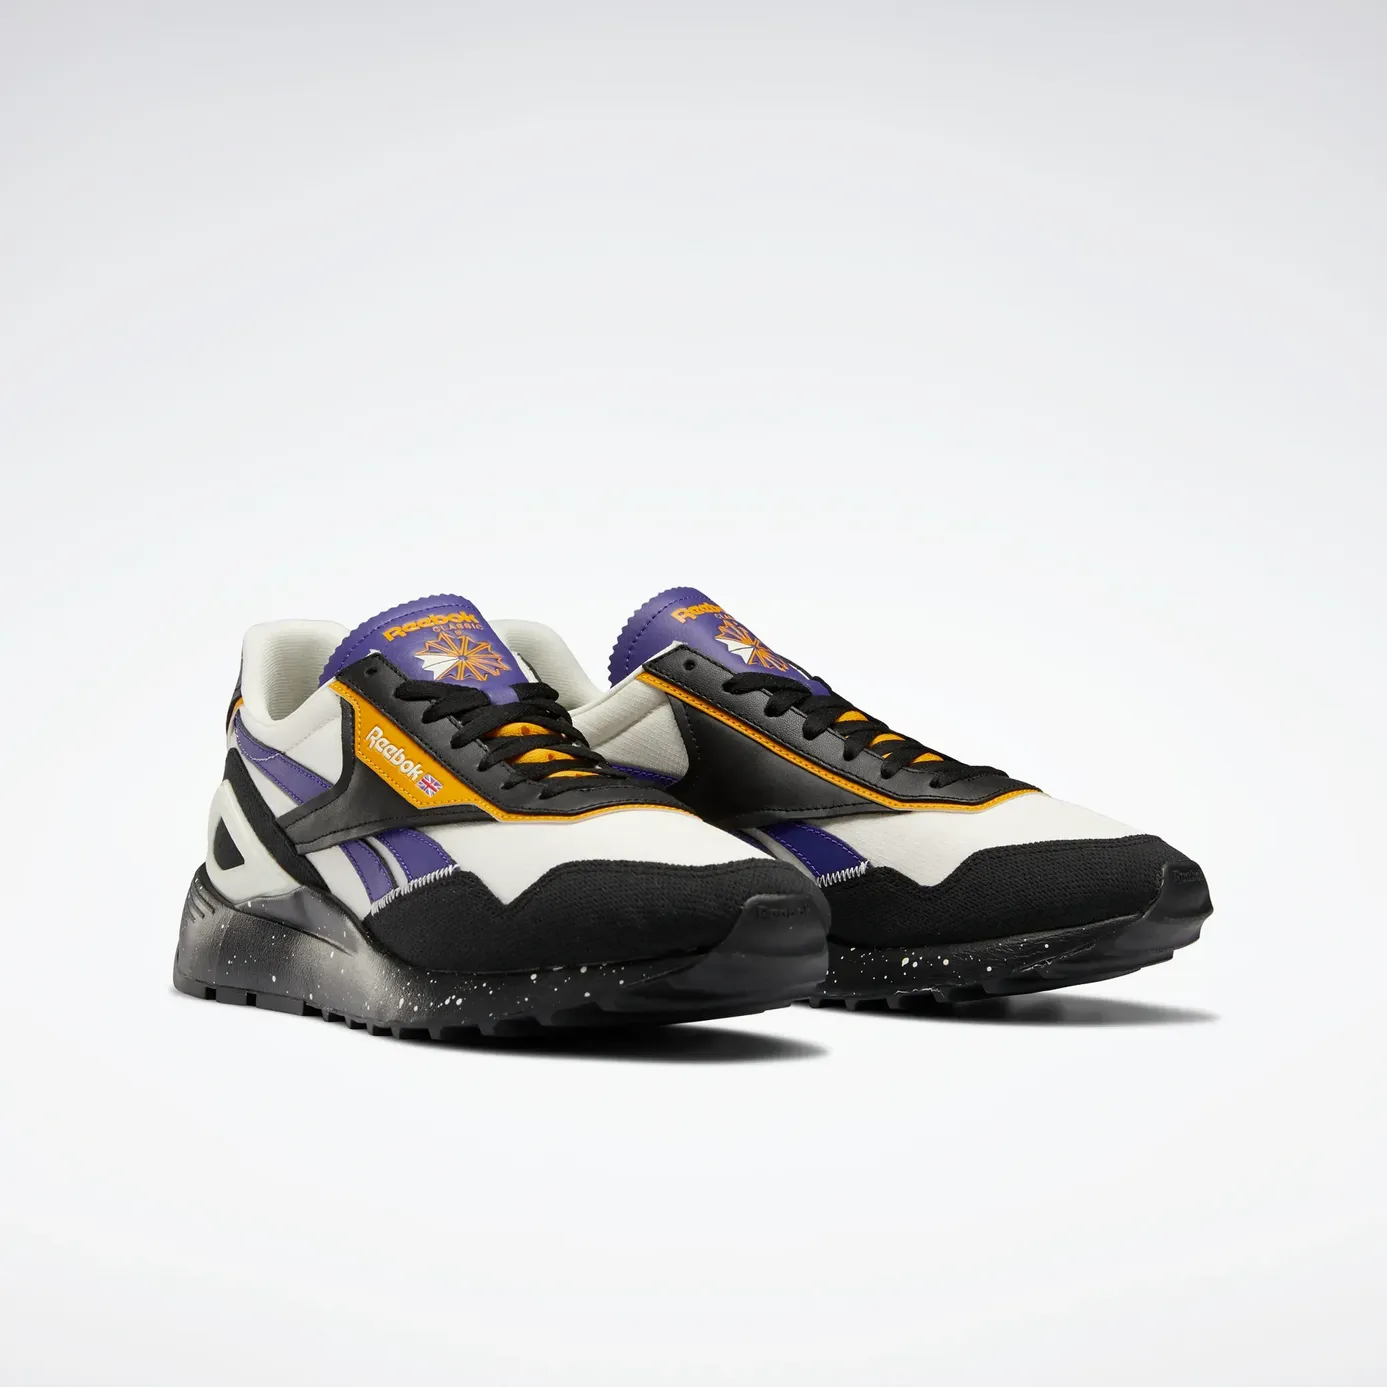 Men's Size 8.0 (Women's 9.0) Nike Shoes | SidelineSwap